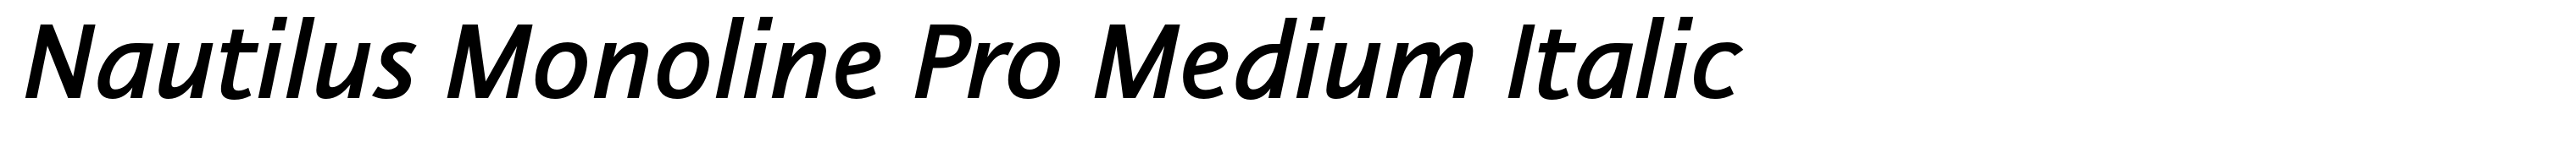 Nautilus Monoline Pro Medium Italic